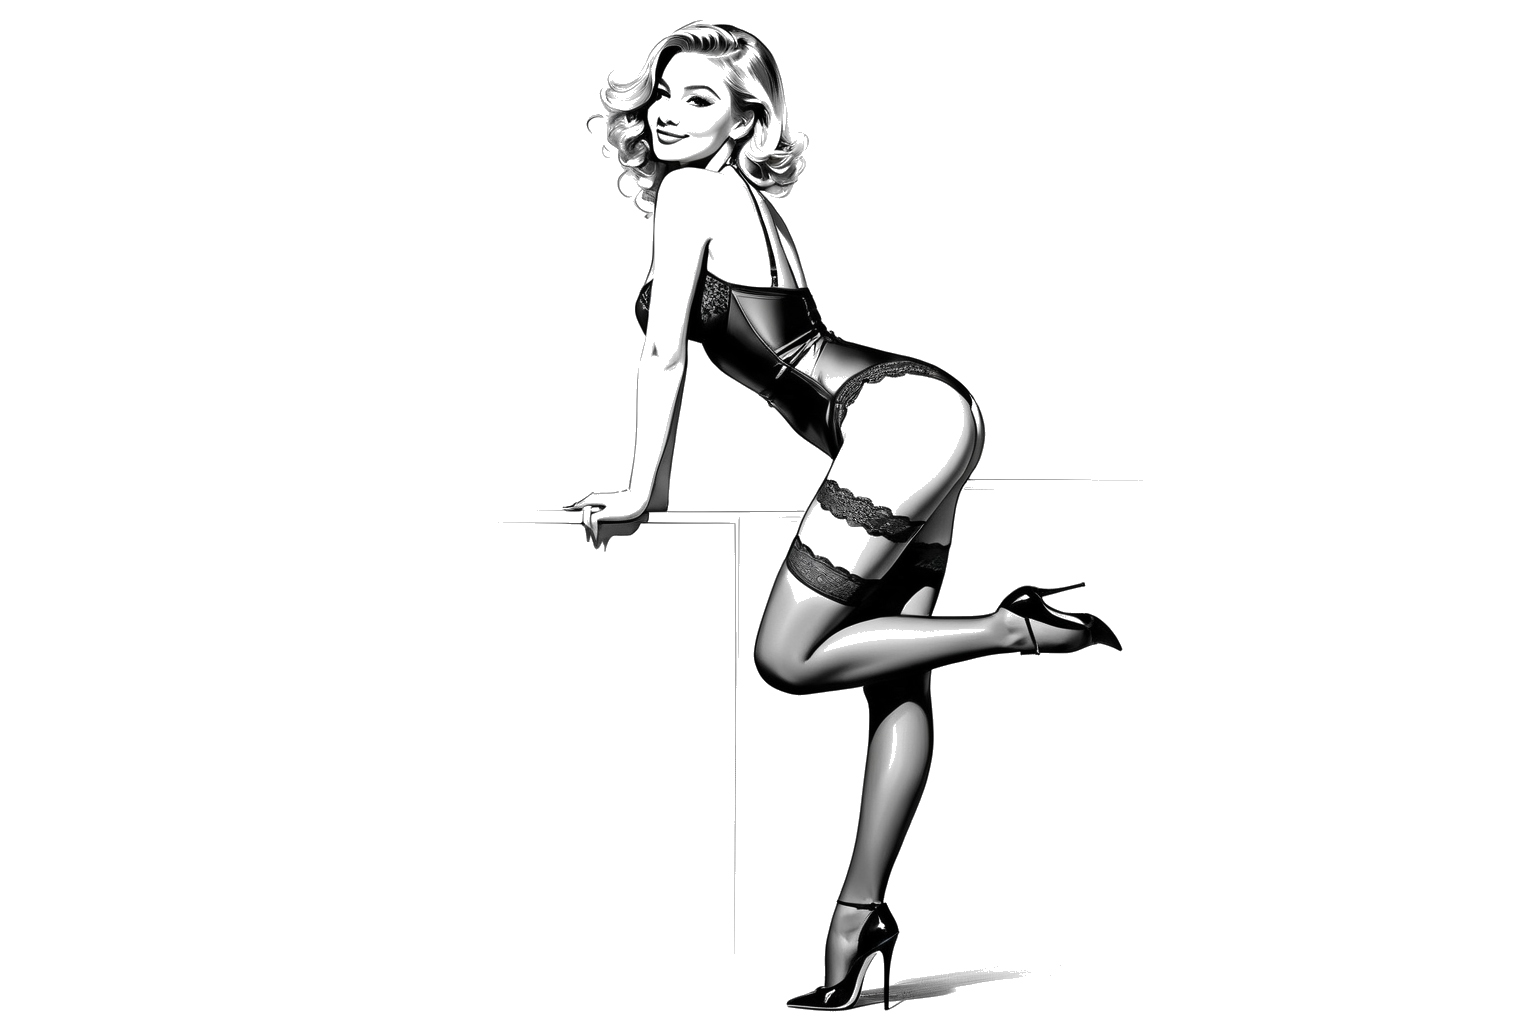 Illustratie van een vrouw in vintage lingerie en hoge hakken, opvallende boudoir-poses met de ene hand op de heup en de andere op een oppervlak, glimlachend naar de kijker.